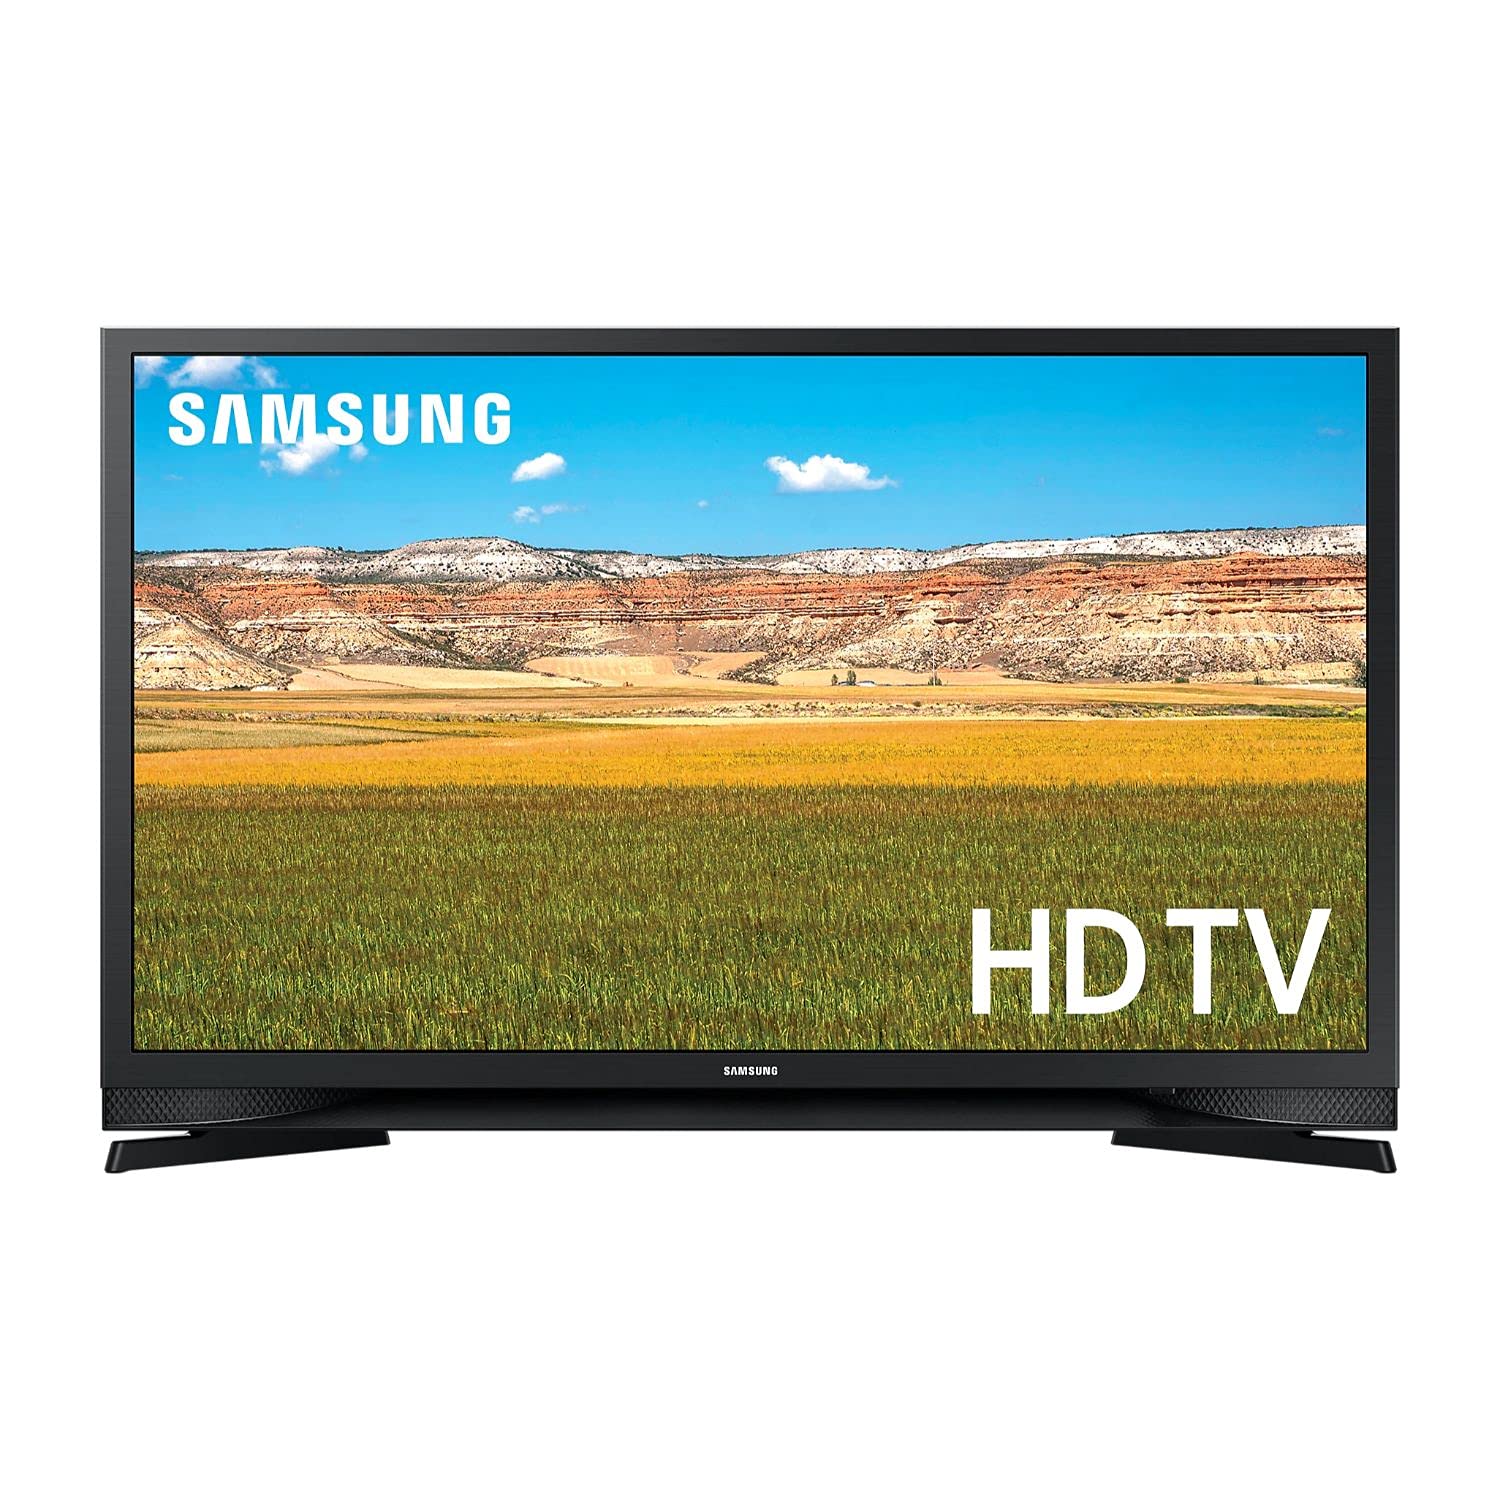 Samsung Smart TV model number